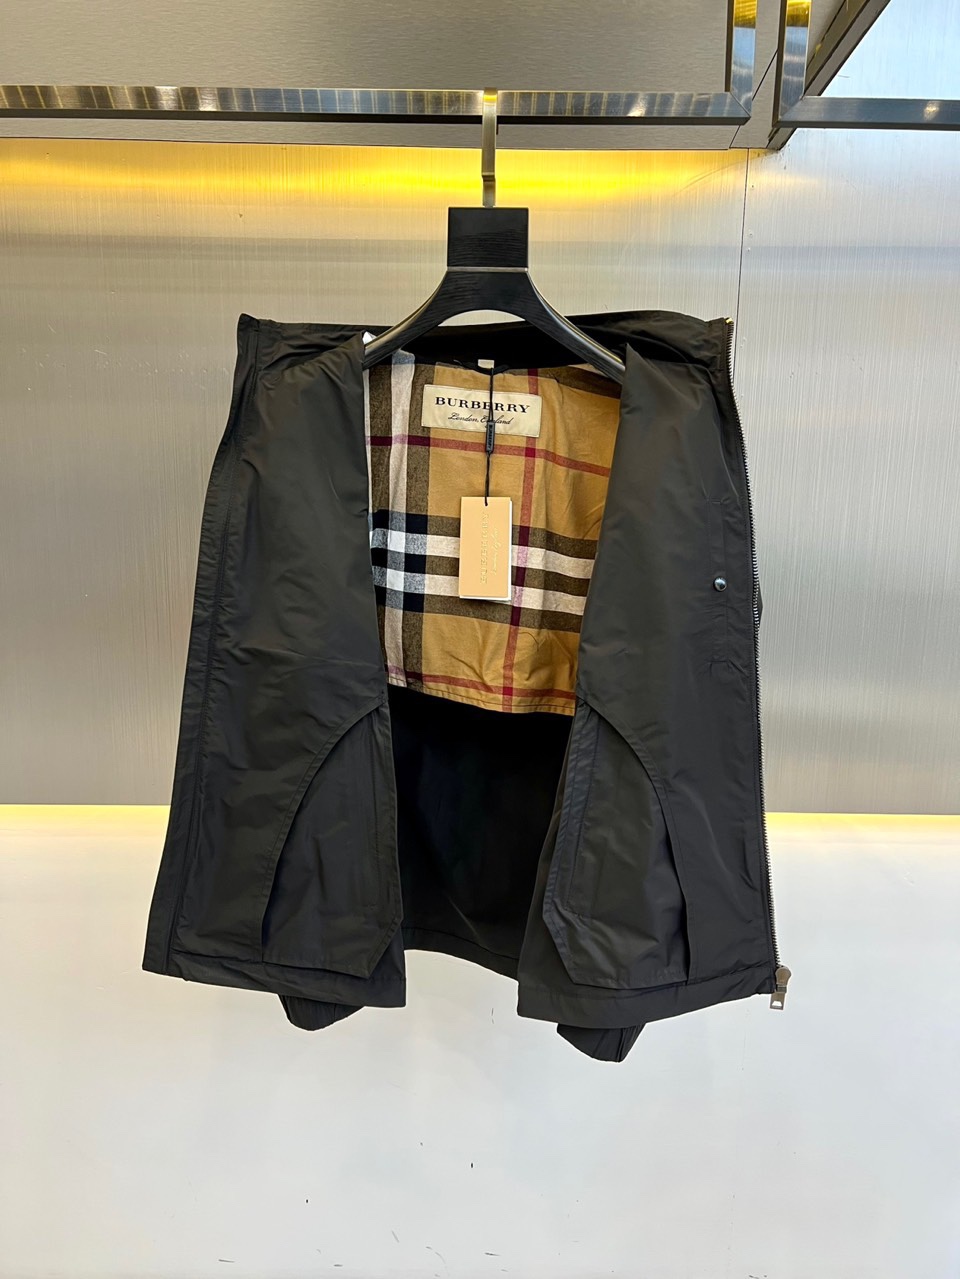 Burber巴宝24s新品立领夹克贸易渠道总是那么的强硬细节感和设计感都是非常完美的,这款众款夹克对于大